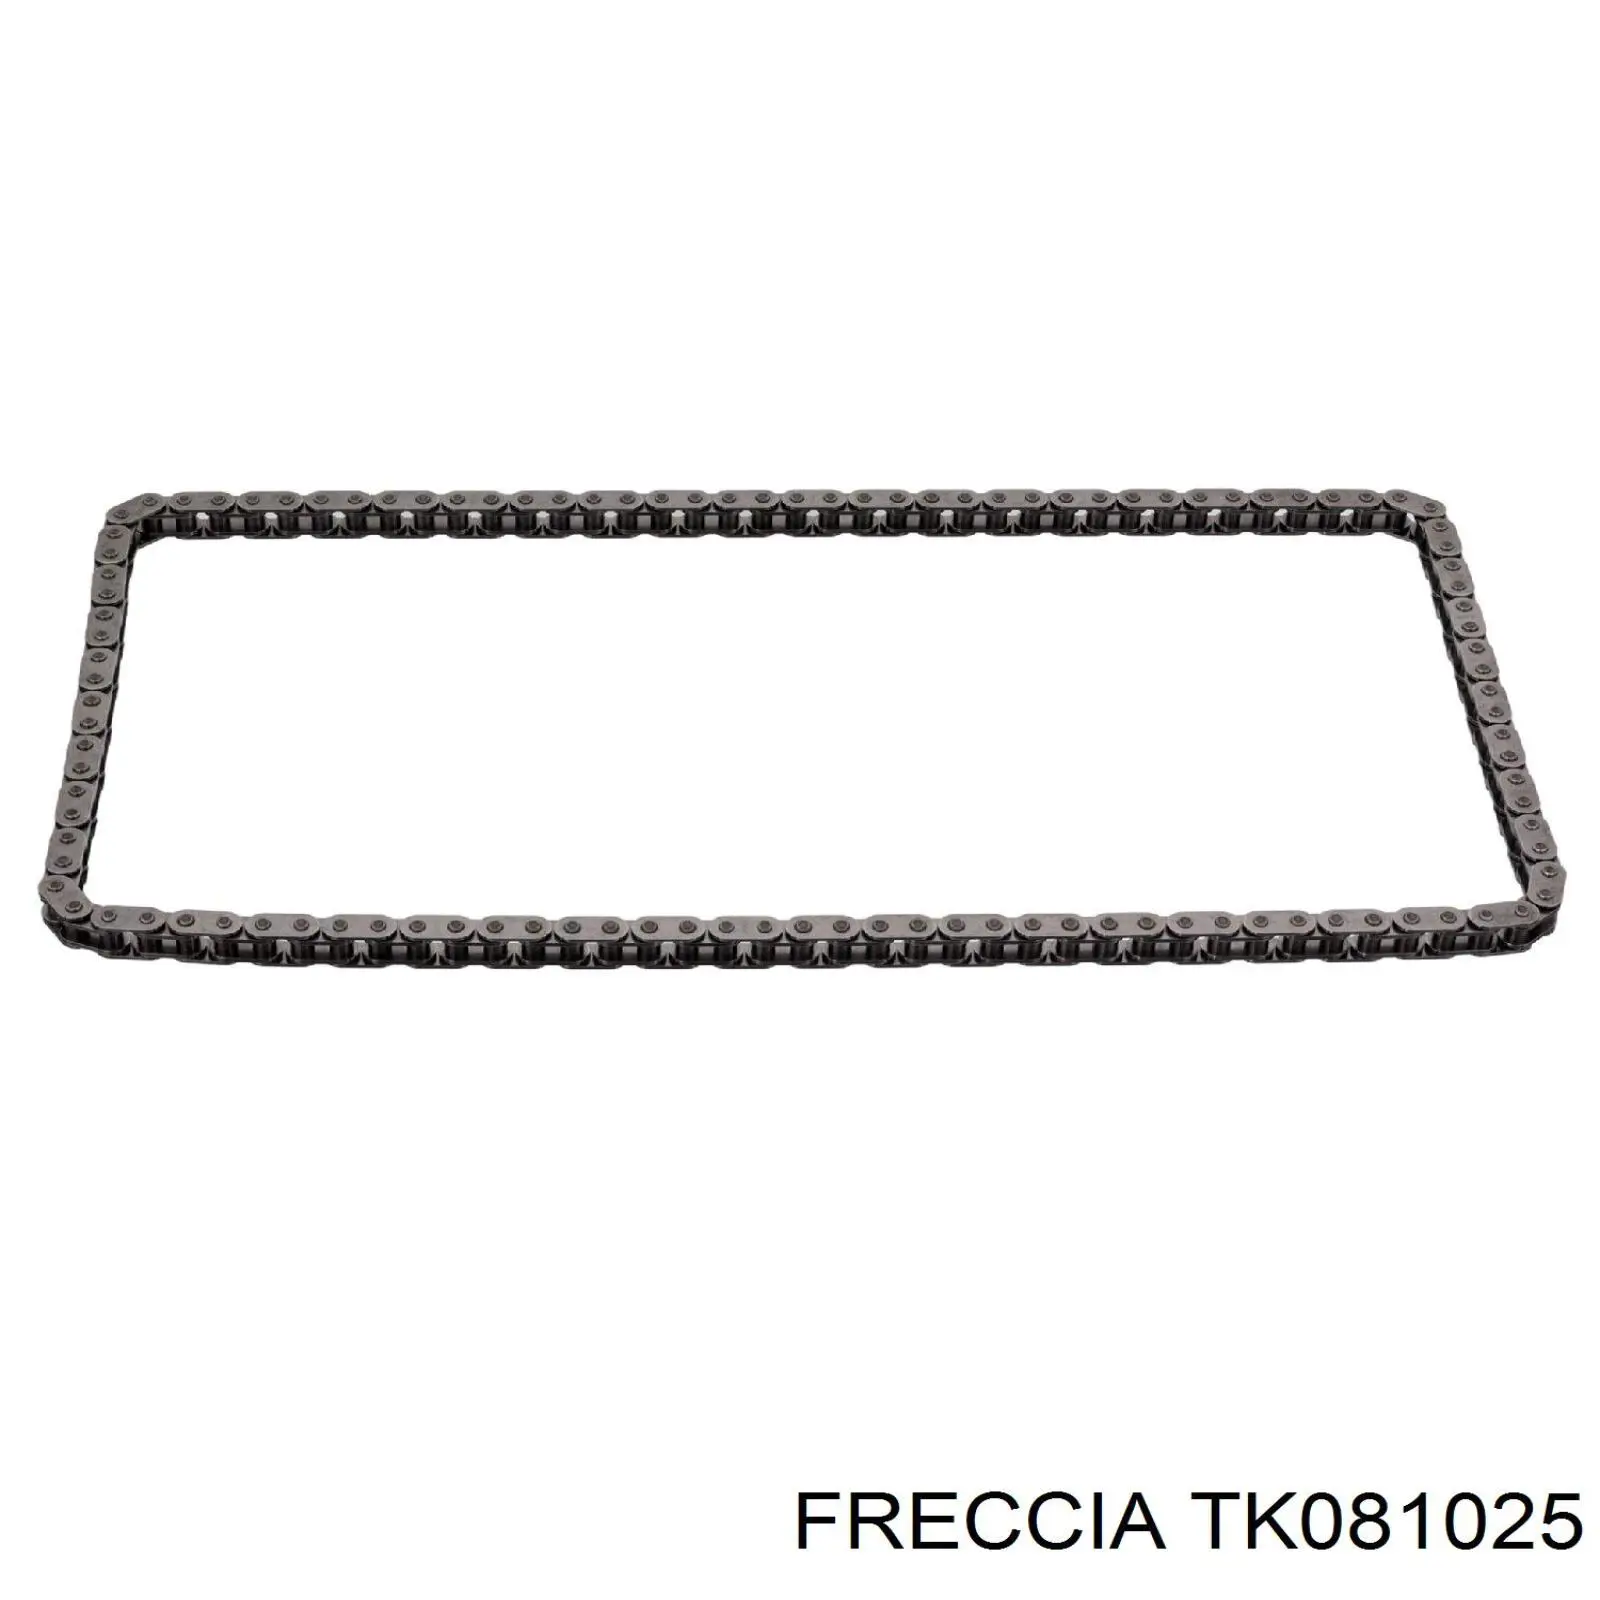 TK081025 Freccia kit de cadenas de distribución